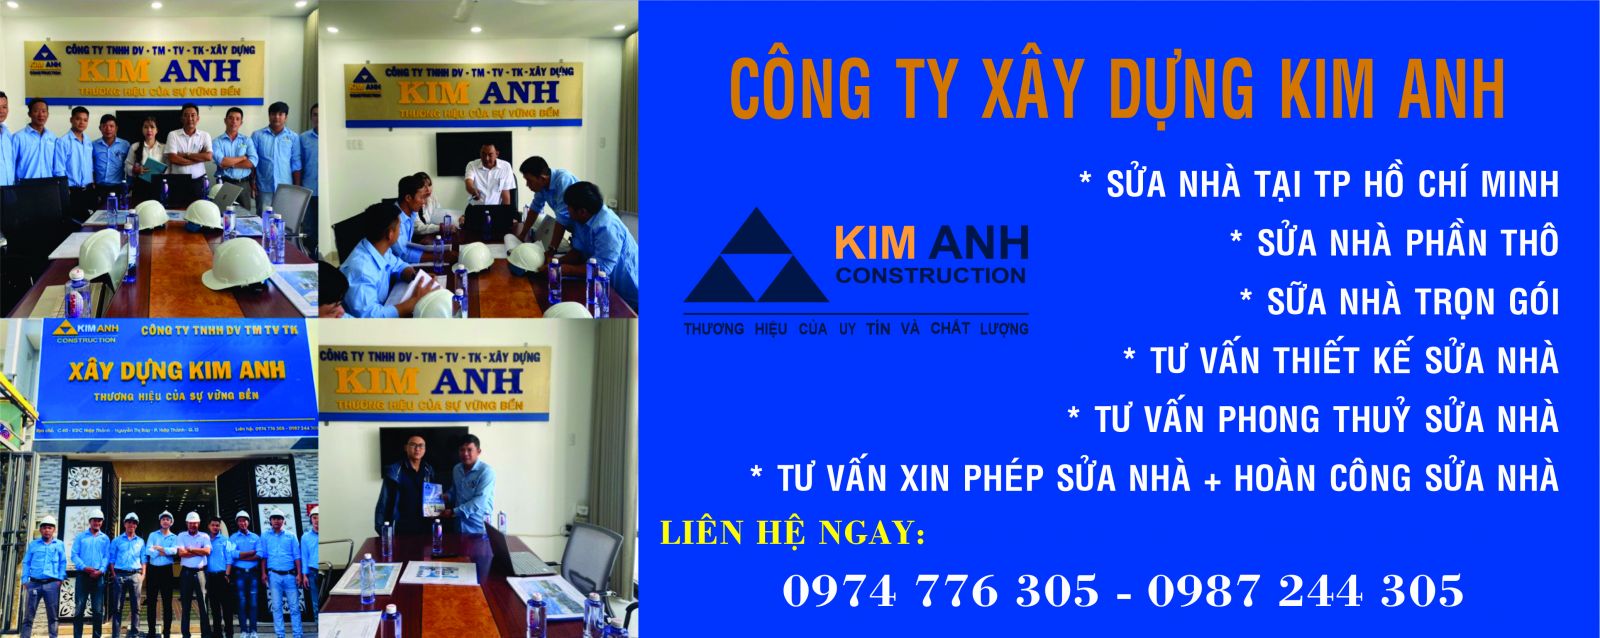 Sửa chữa,nhà tại Quận 10,TPHCM-Công ty Xây Dựn Kim Anh-xaydungkimanh.com